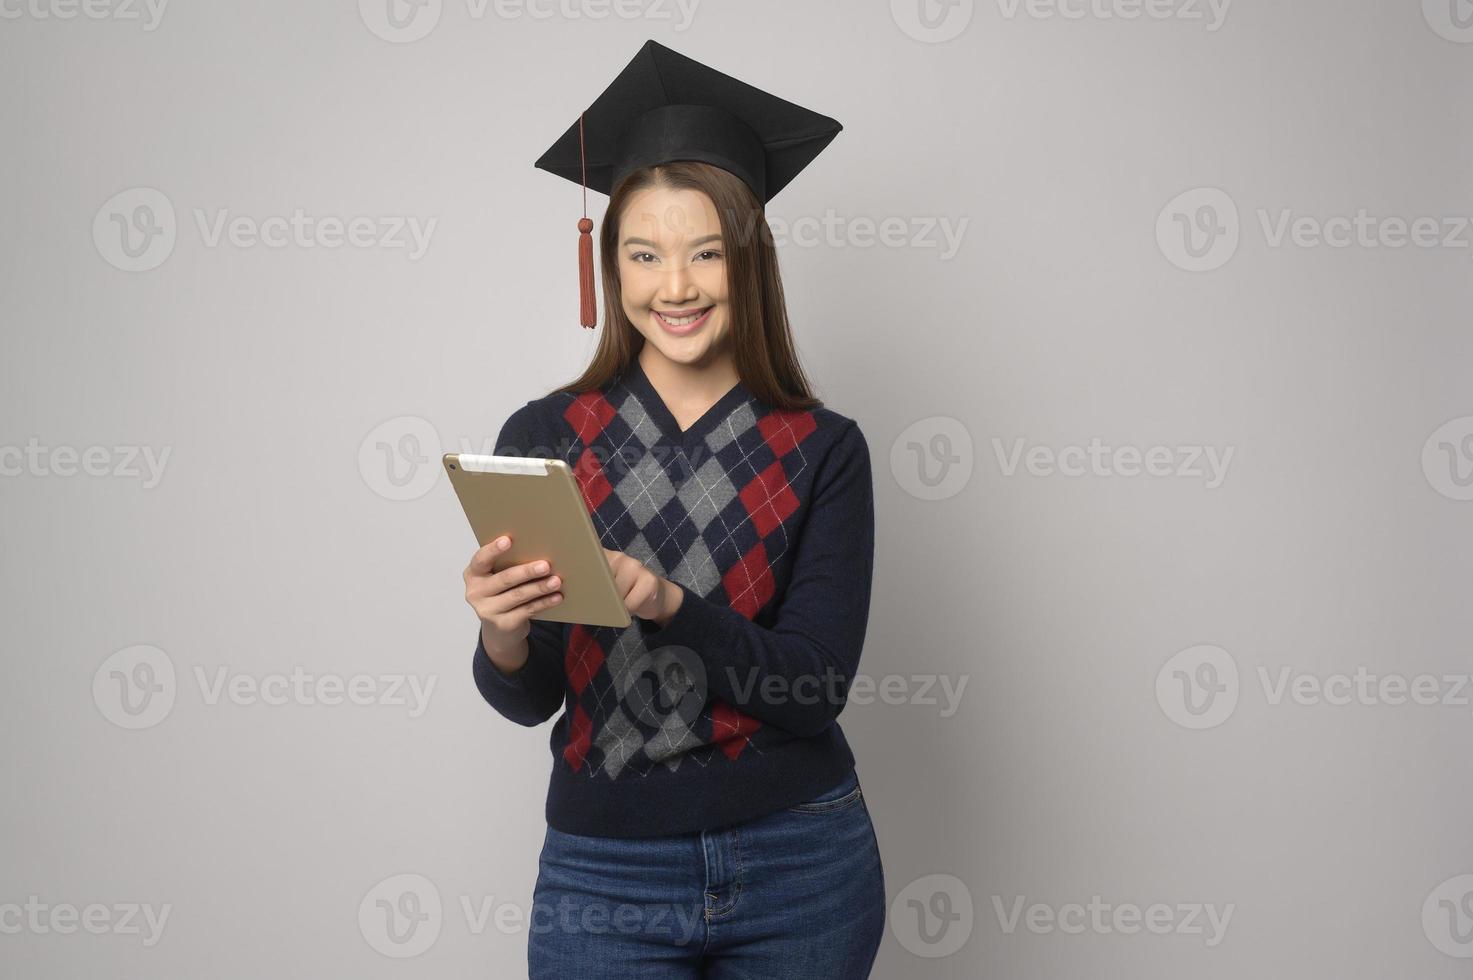 jovem mulher sorridente segurando o chapéu de formatura, educação e conceito universitário foto